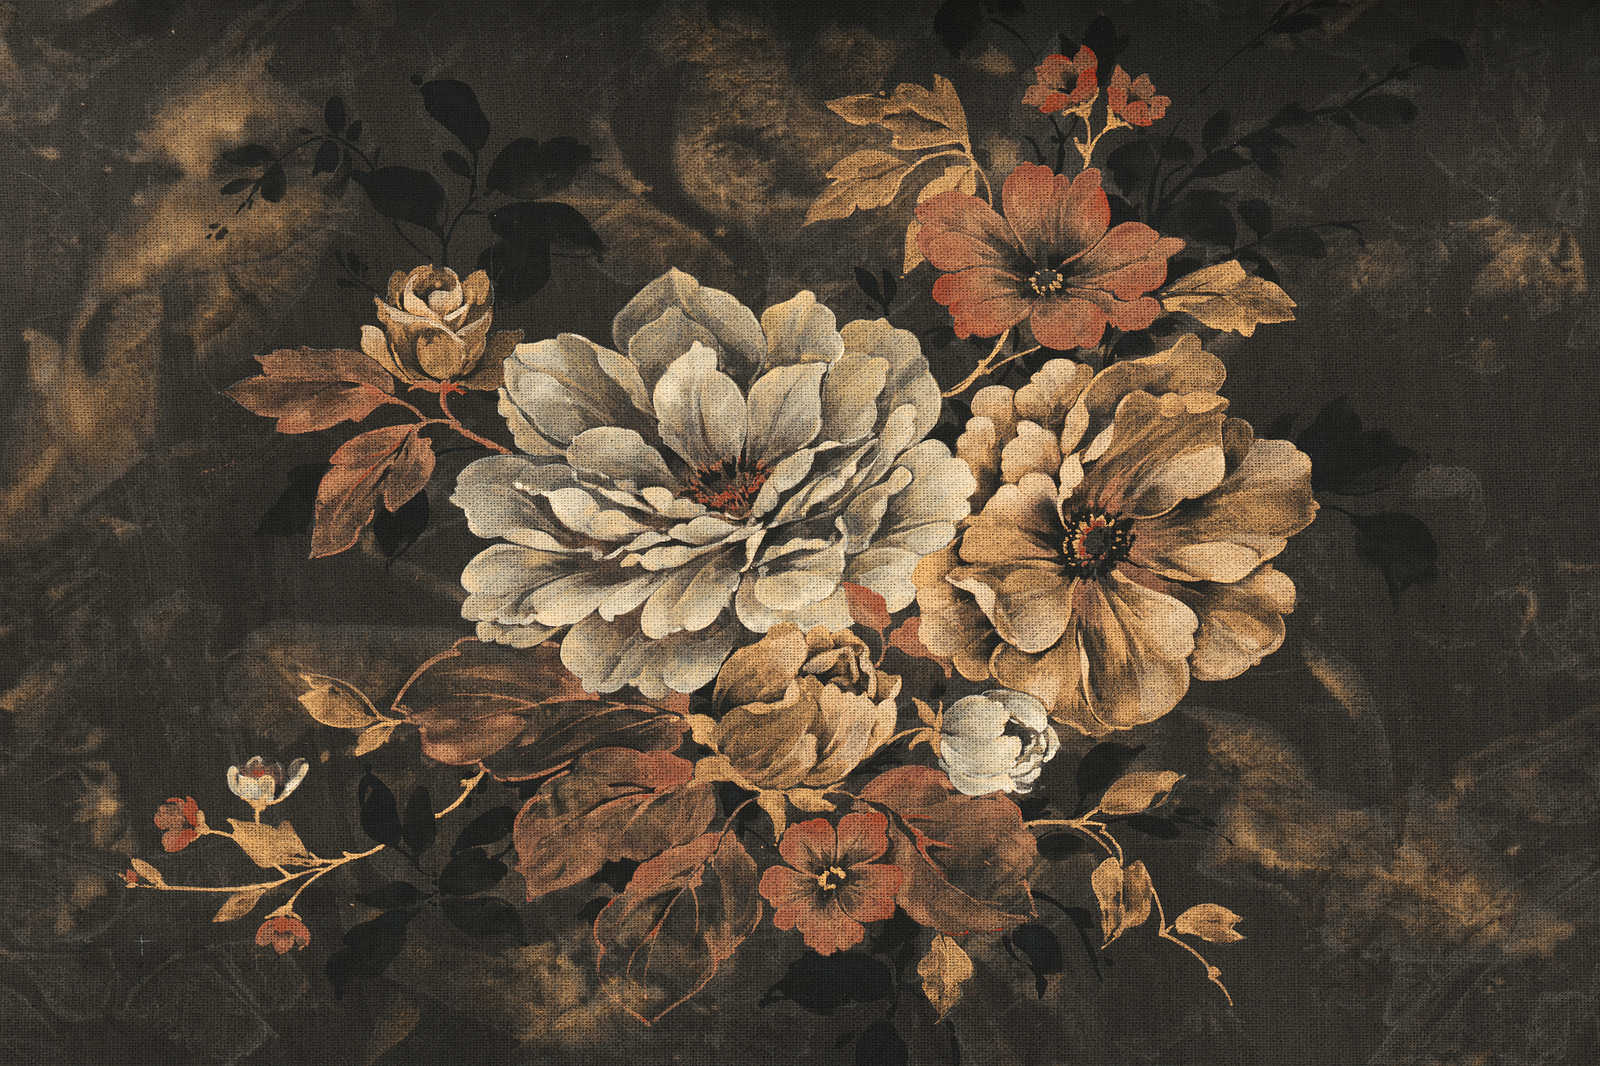             Peinture à l'huile sur toile Style de fleurs, look vintage - 1,20 m x 0,80 m
        